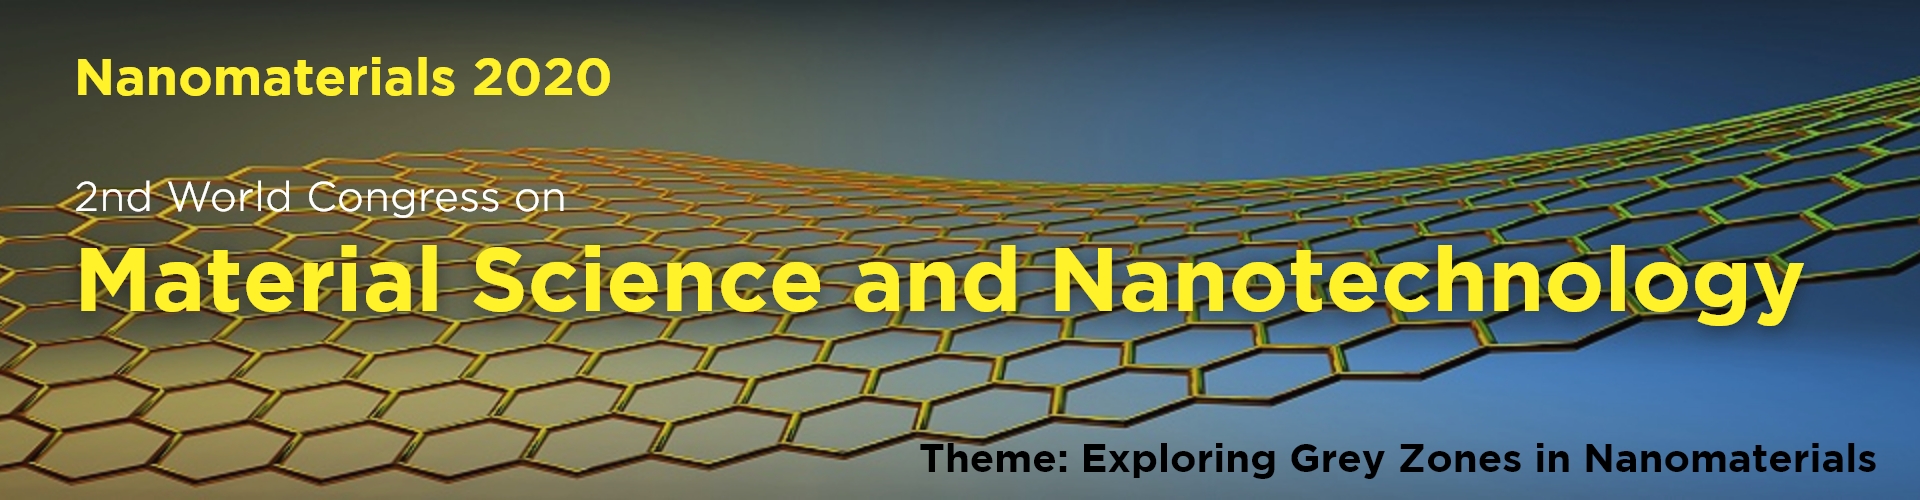 Advanced Nanomaterials Conferences 2020 | Nanotechnology Conferences | Material science events | Nanosciences Conferences | Nanotech Conference | Nano meetings | Nano science Events | Asia | Middle Eeast | Dubai 2020, Dubai, United Arab Emirates